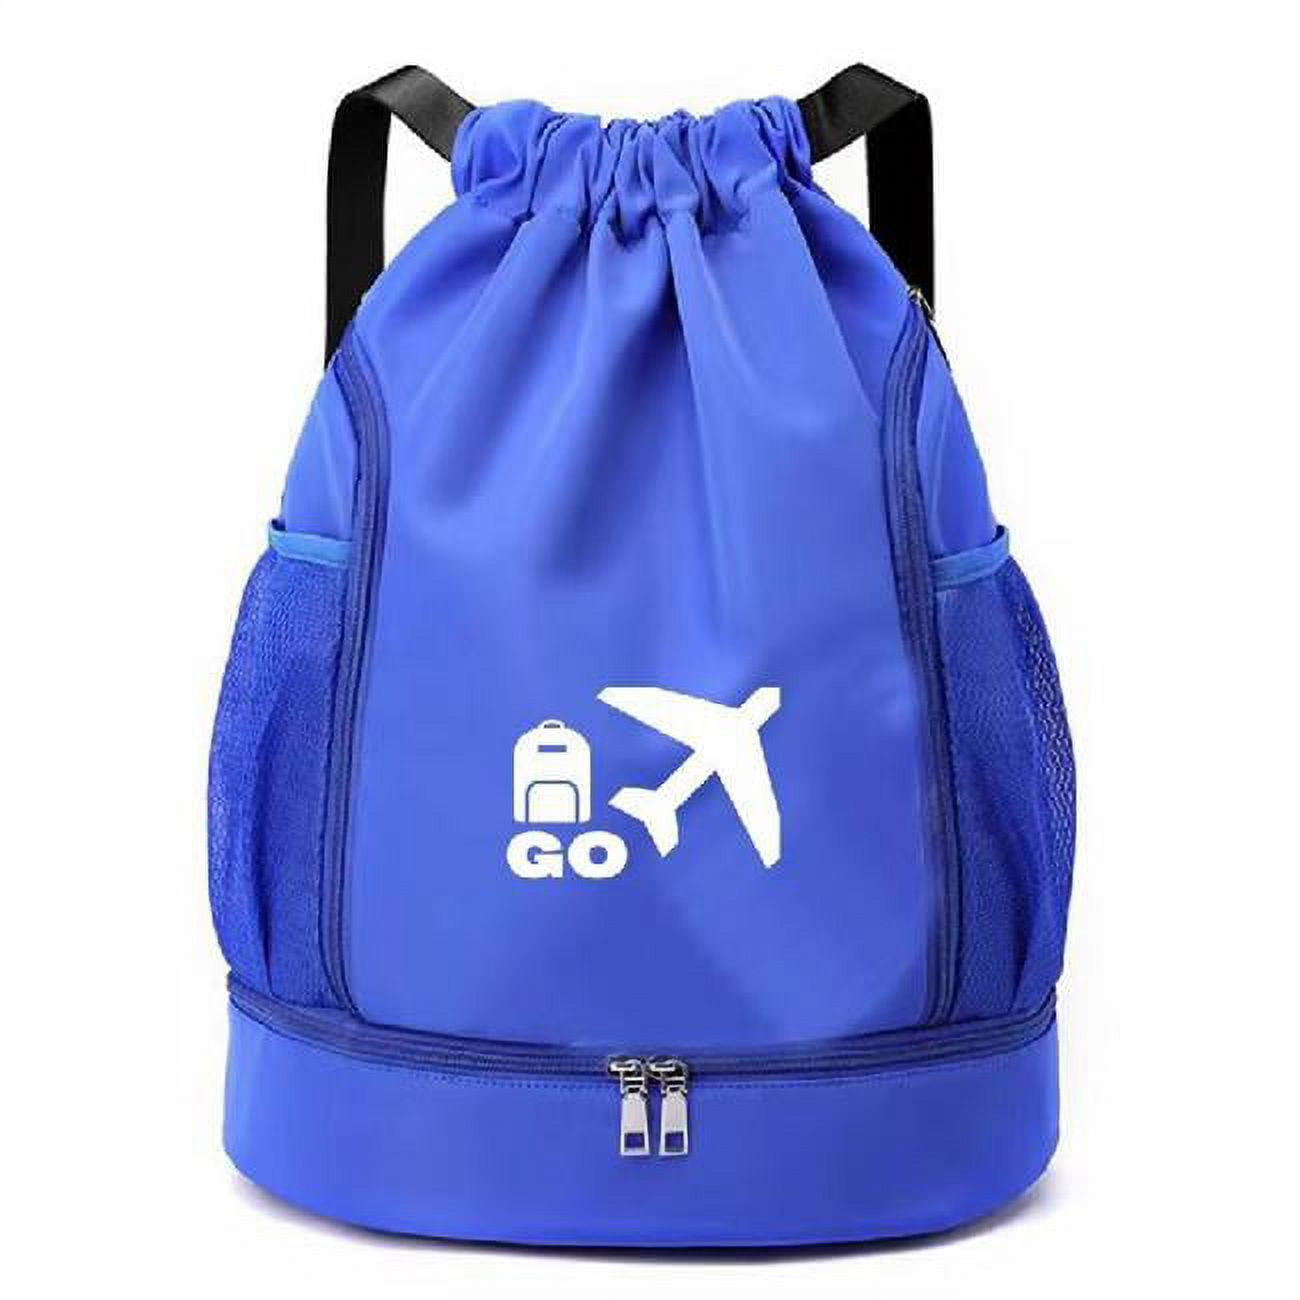 Picture of 3P Experts RG-GOBAG-OCN Go Bag - Jet Set Tote Backpack, Blue